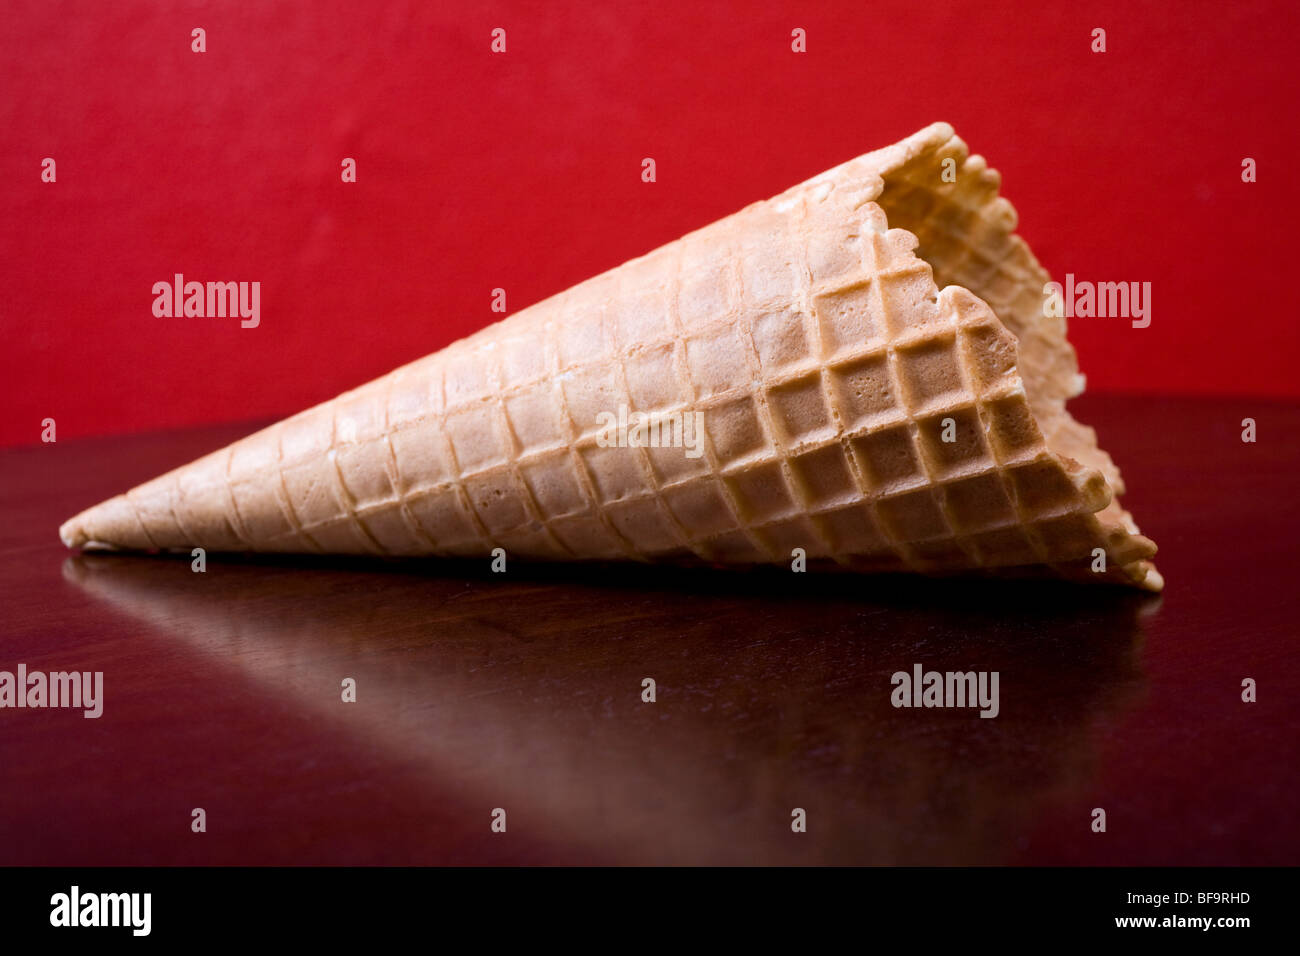 Cornet de crème glacée de qualité sur une table marron contre un mur rouge. Banque D'Images